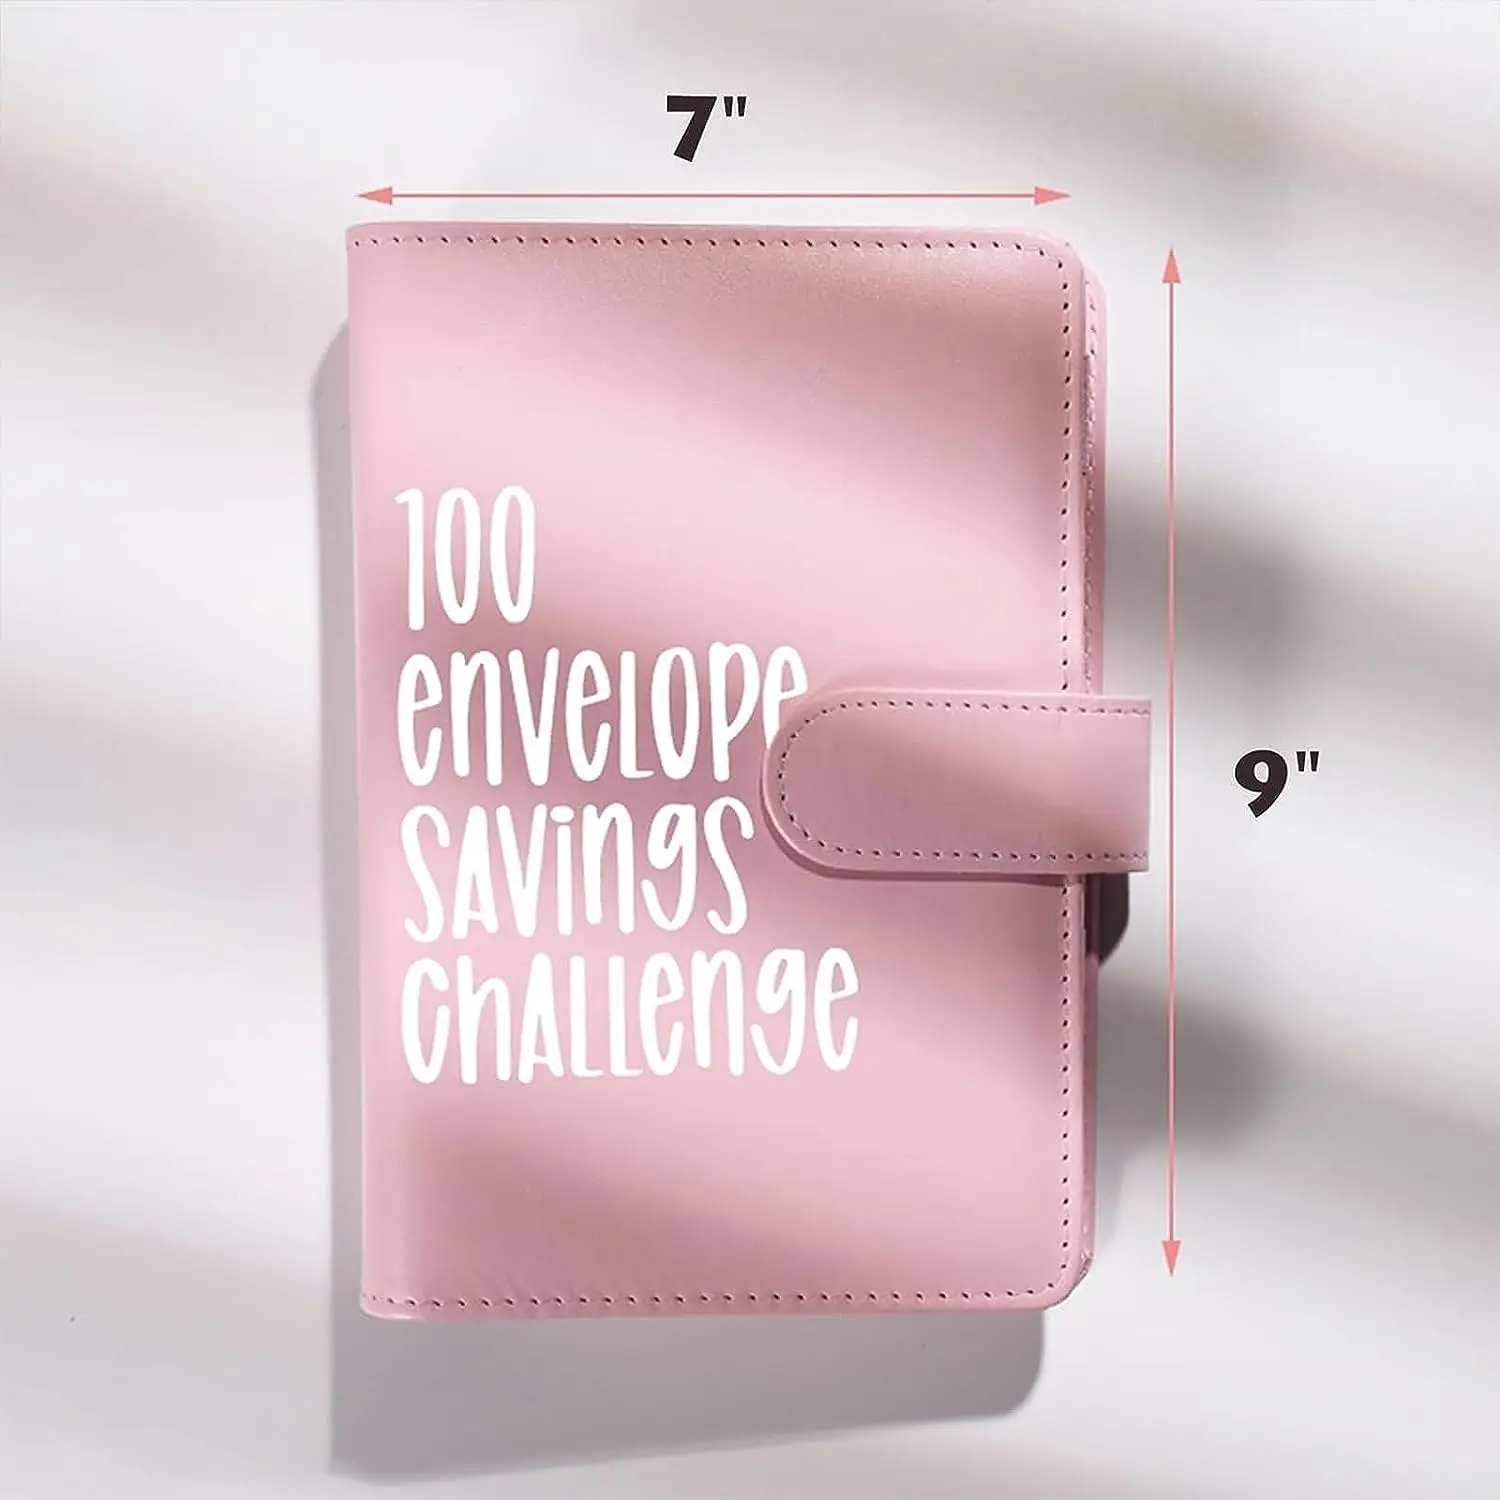 100 конвертов Challenge Binder Savings Challenges Бюджетные денежные конверты A5 Binder - простой и увлекательный способ сэкономить 5 050 долларов1